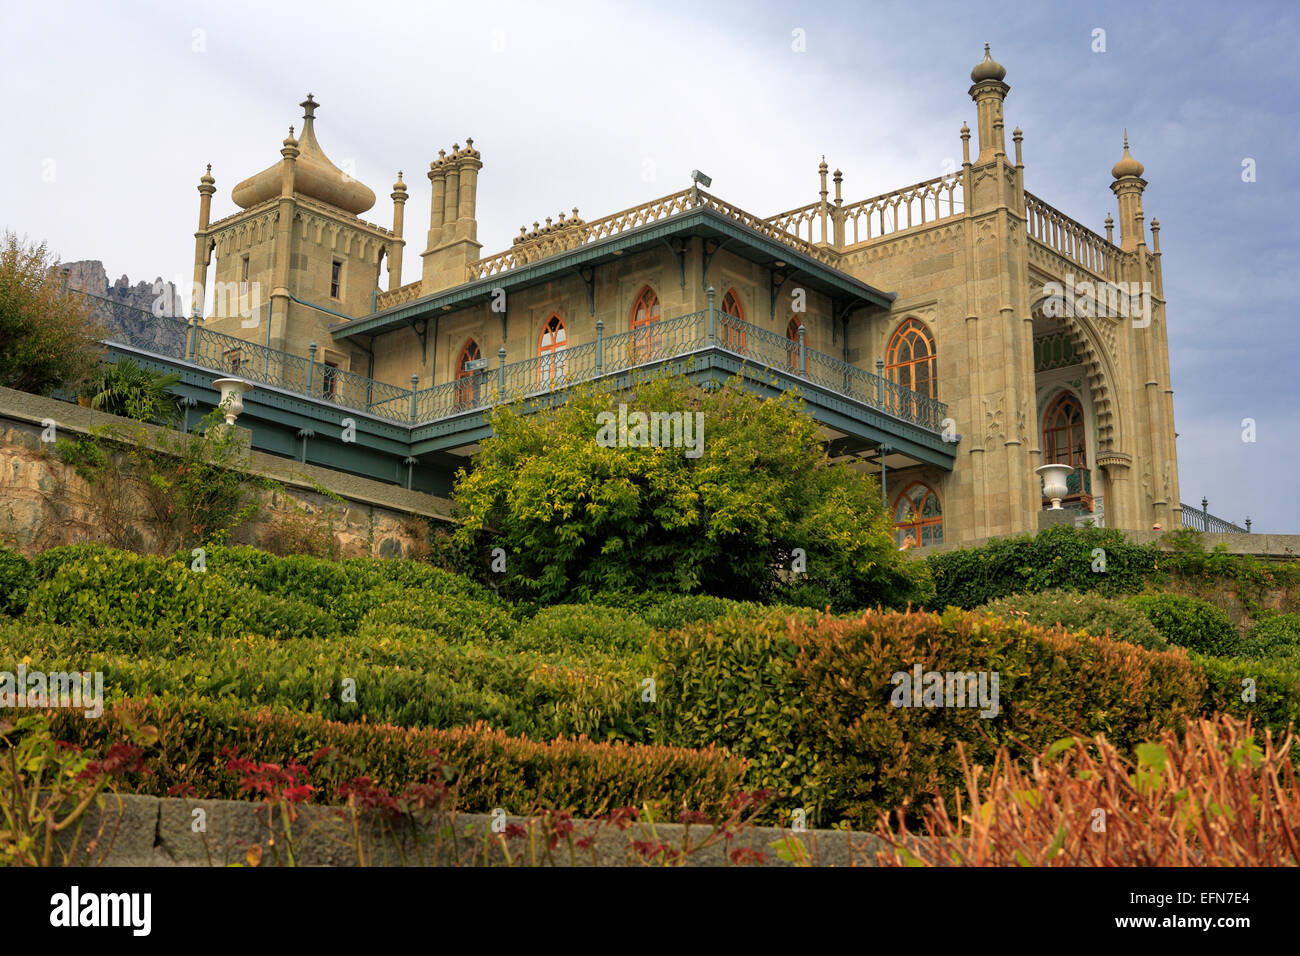 Vorontsov Palace (1848, architect Edward Blore), Alupka, Crimea, Ukraine Stock Photo